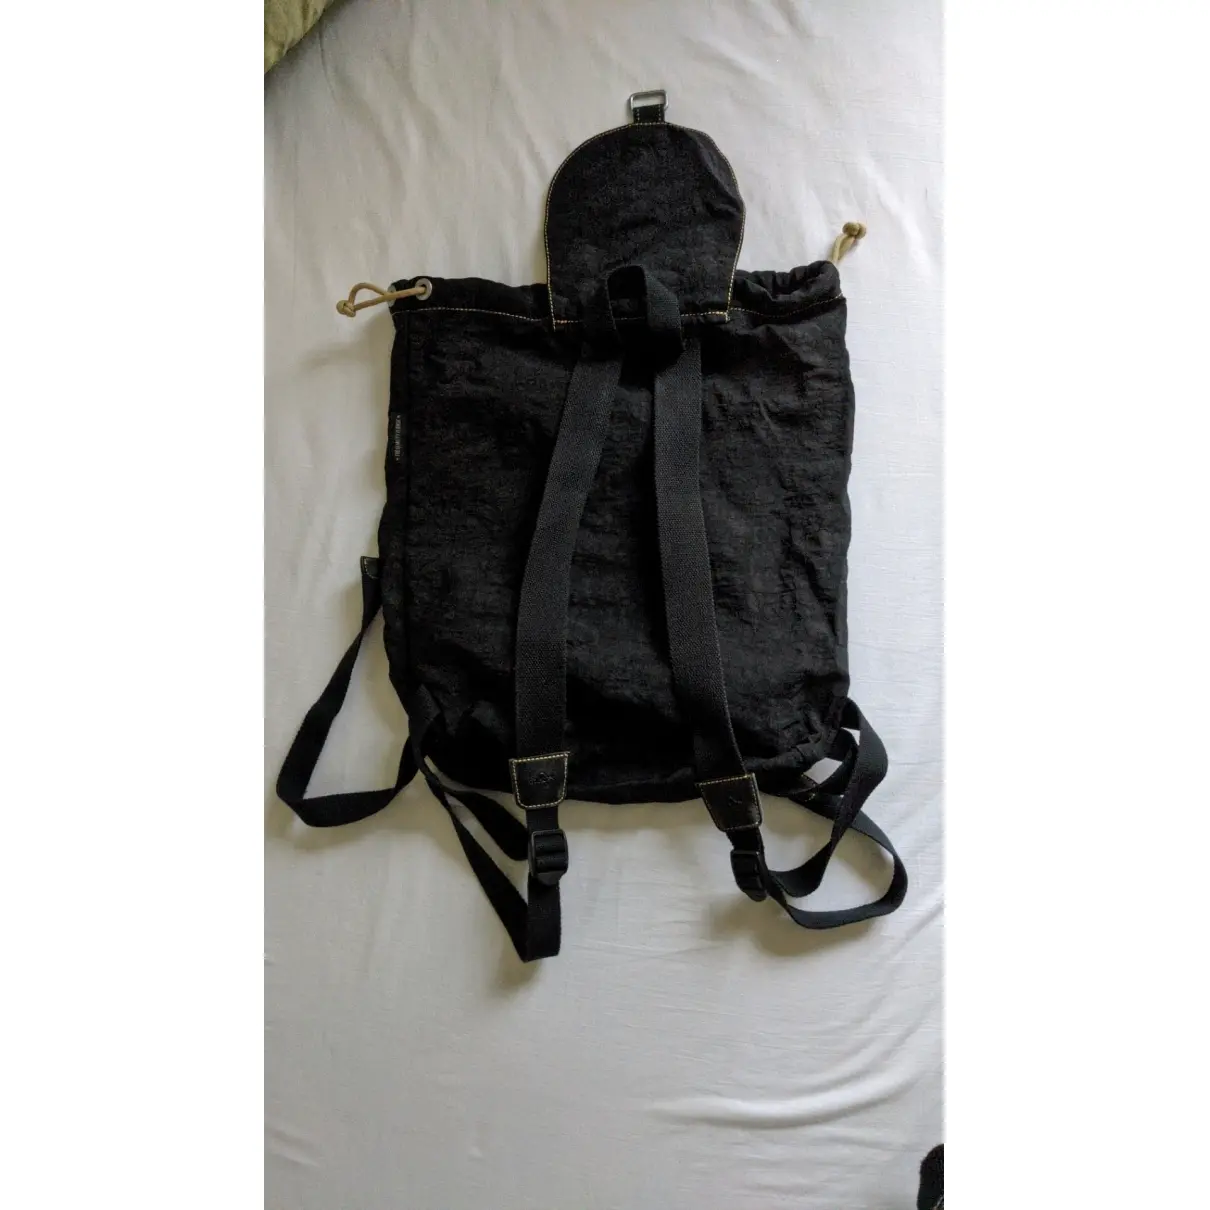 Buy KIPLING Backpack online